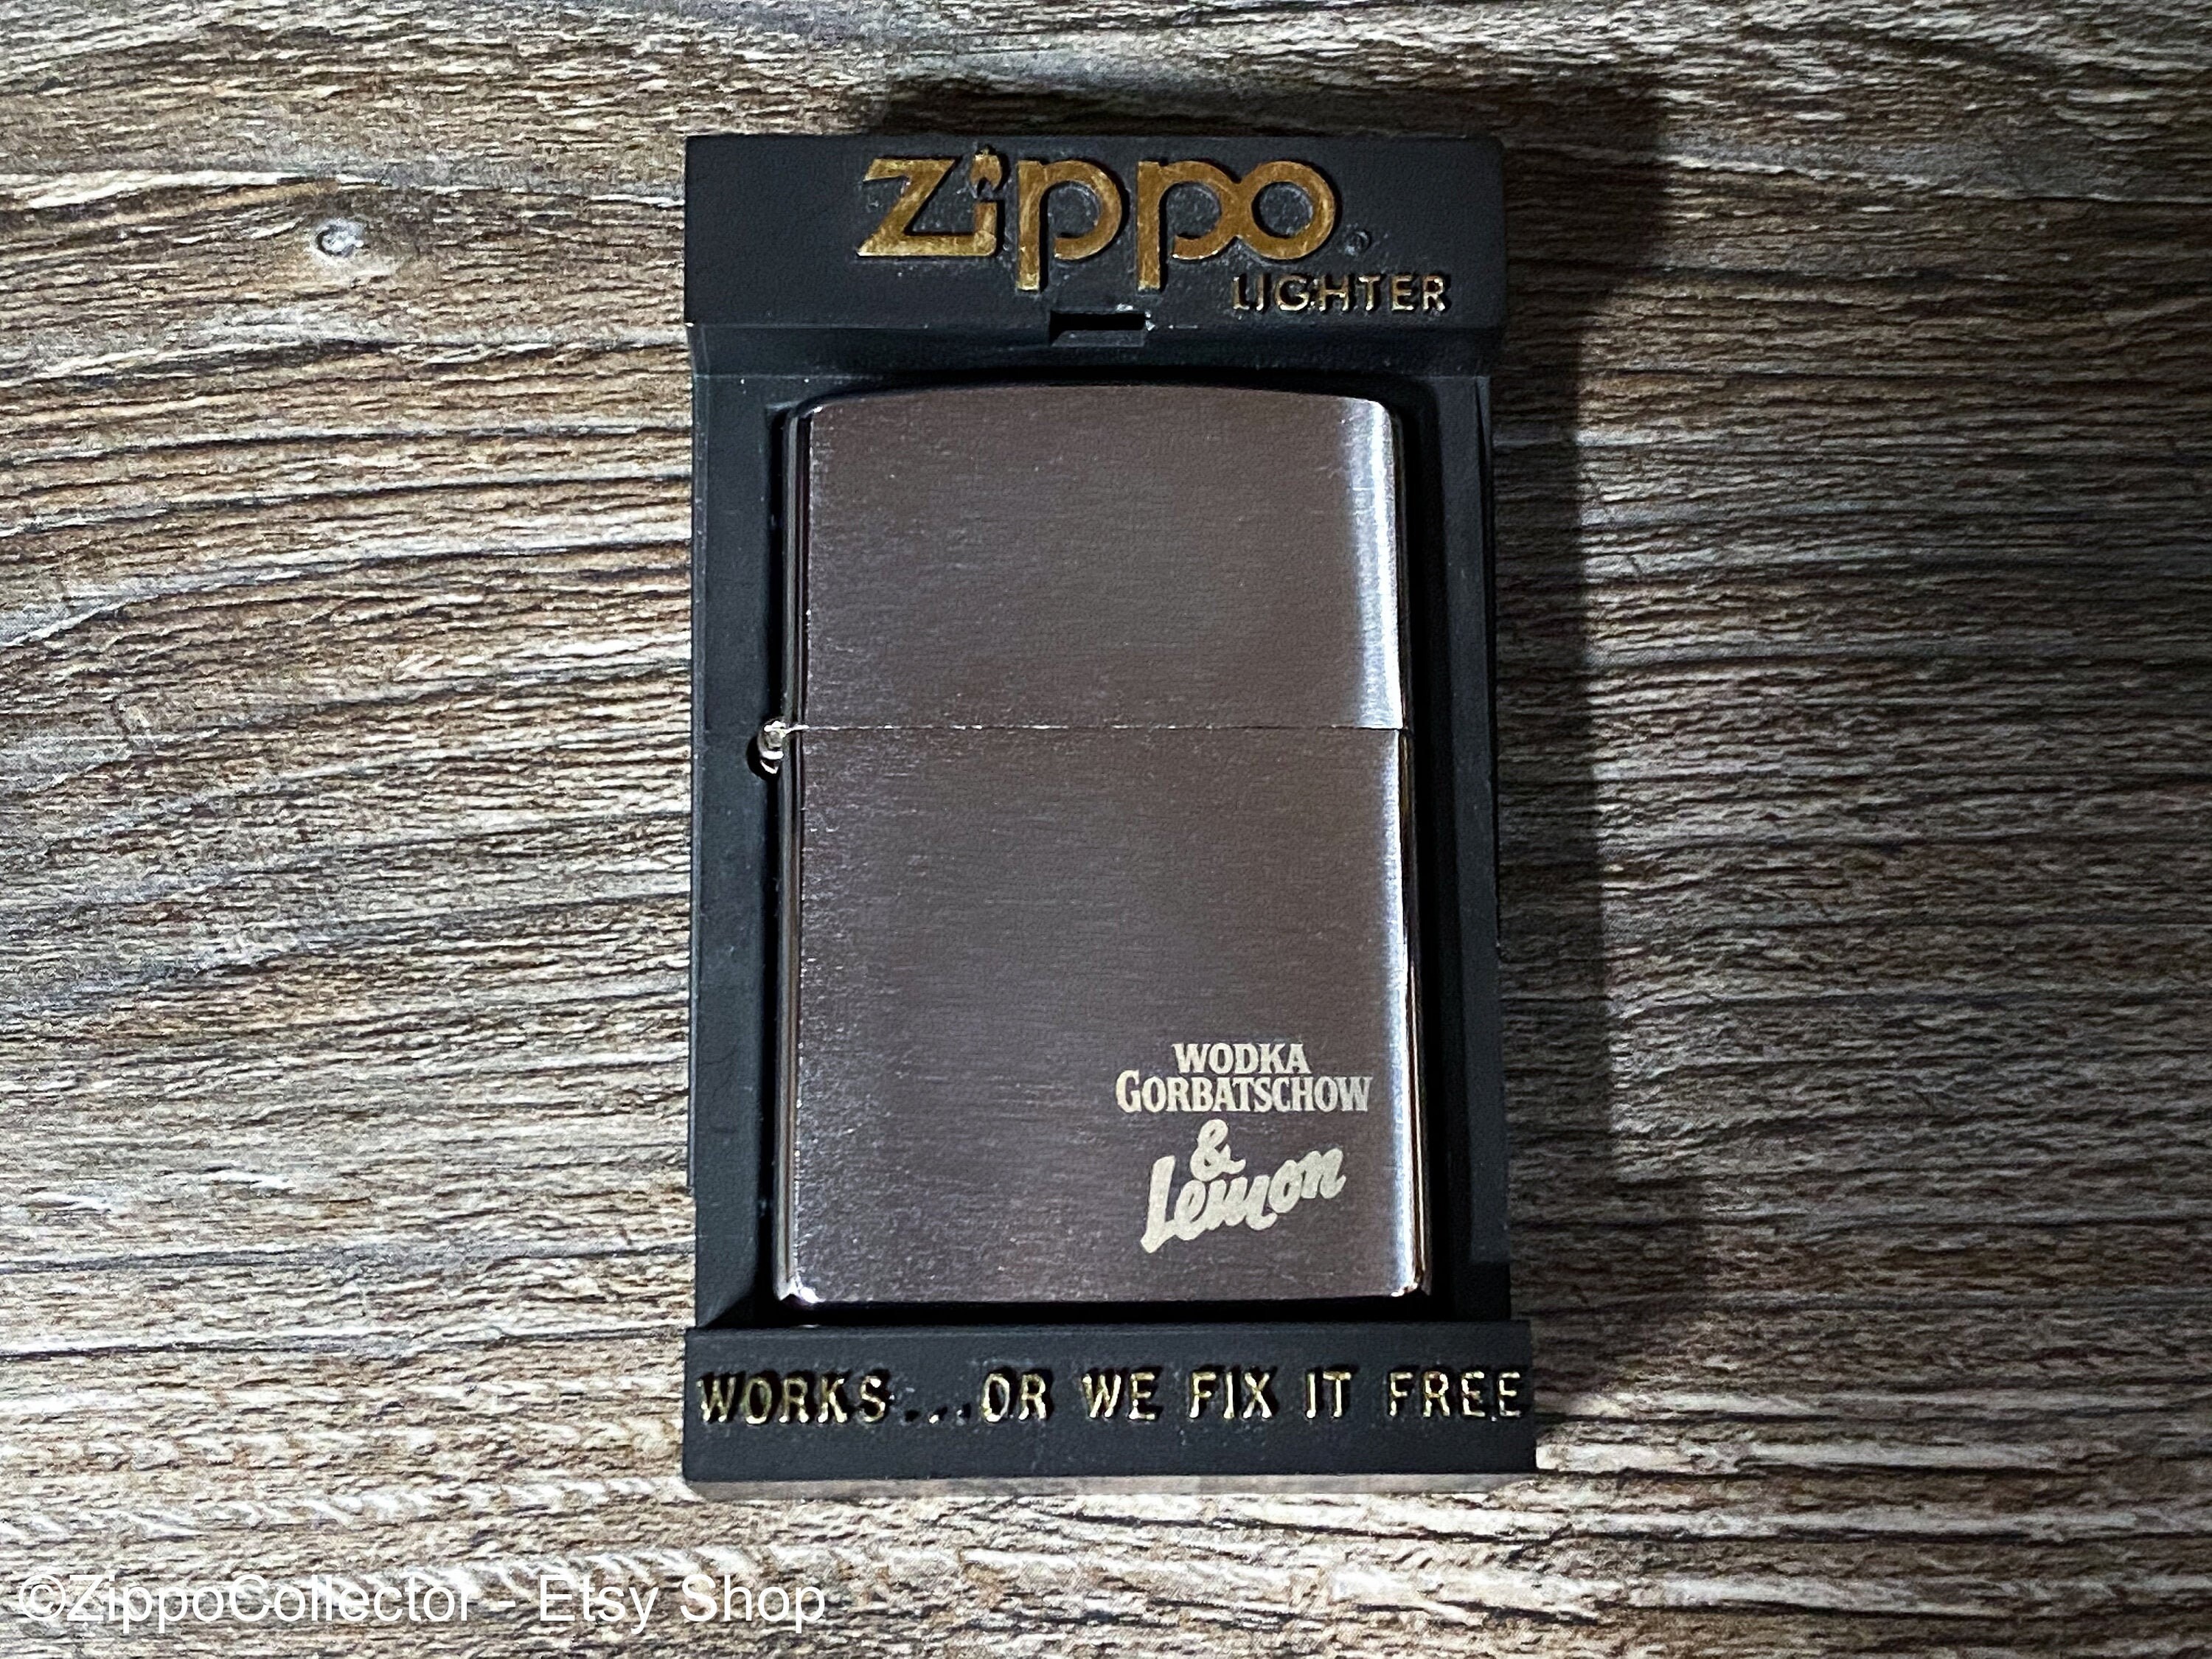 1998 Zippo Lighter - Etsy